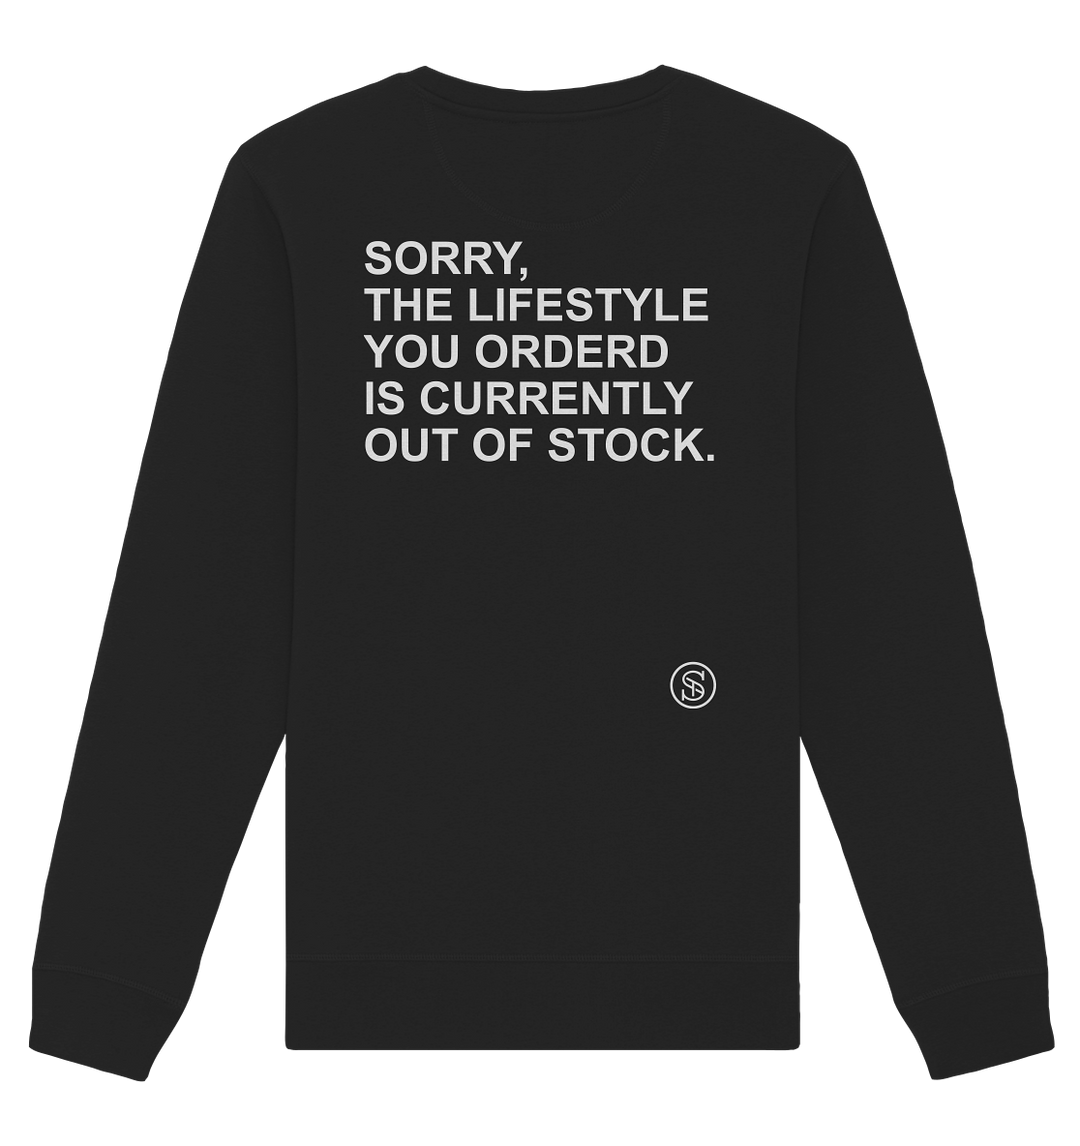 Lifestyle Statement Herren - Organic Sweatshirt Black Sweatshirts True Statement